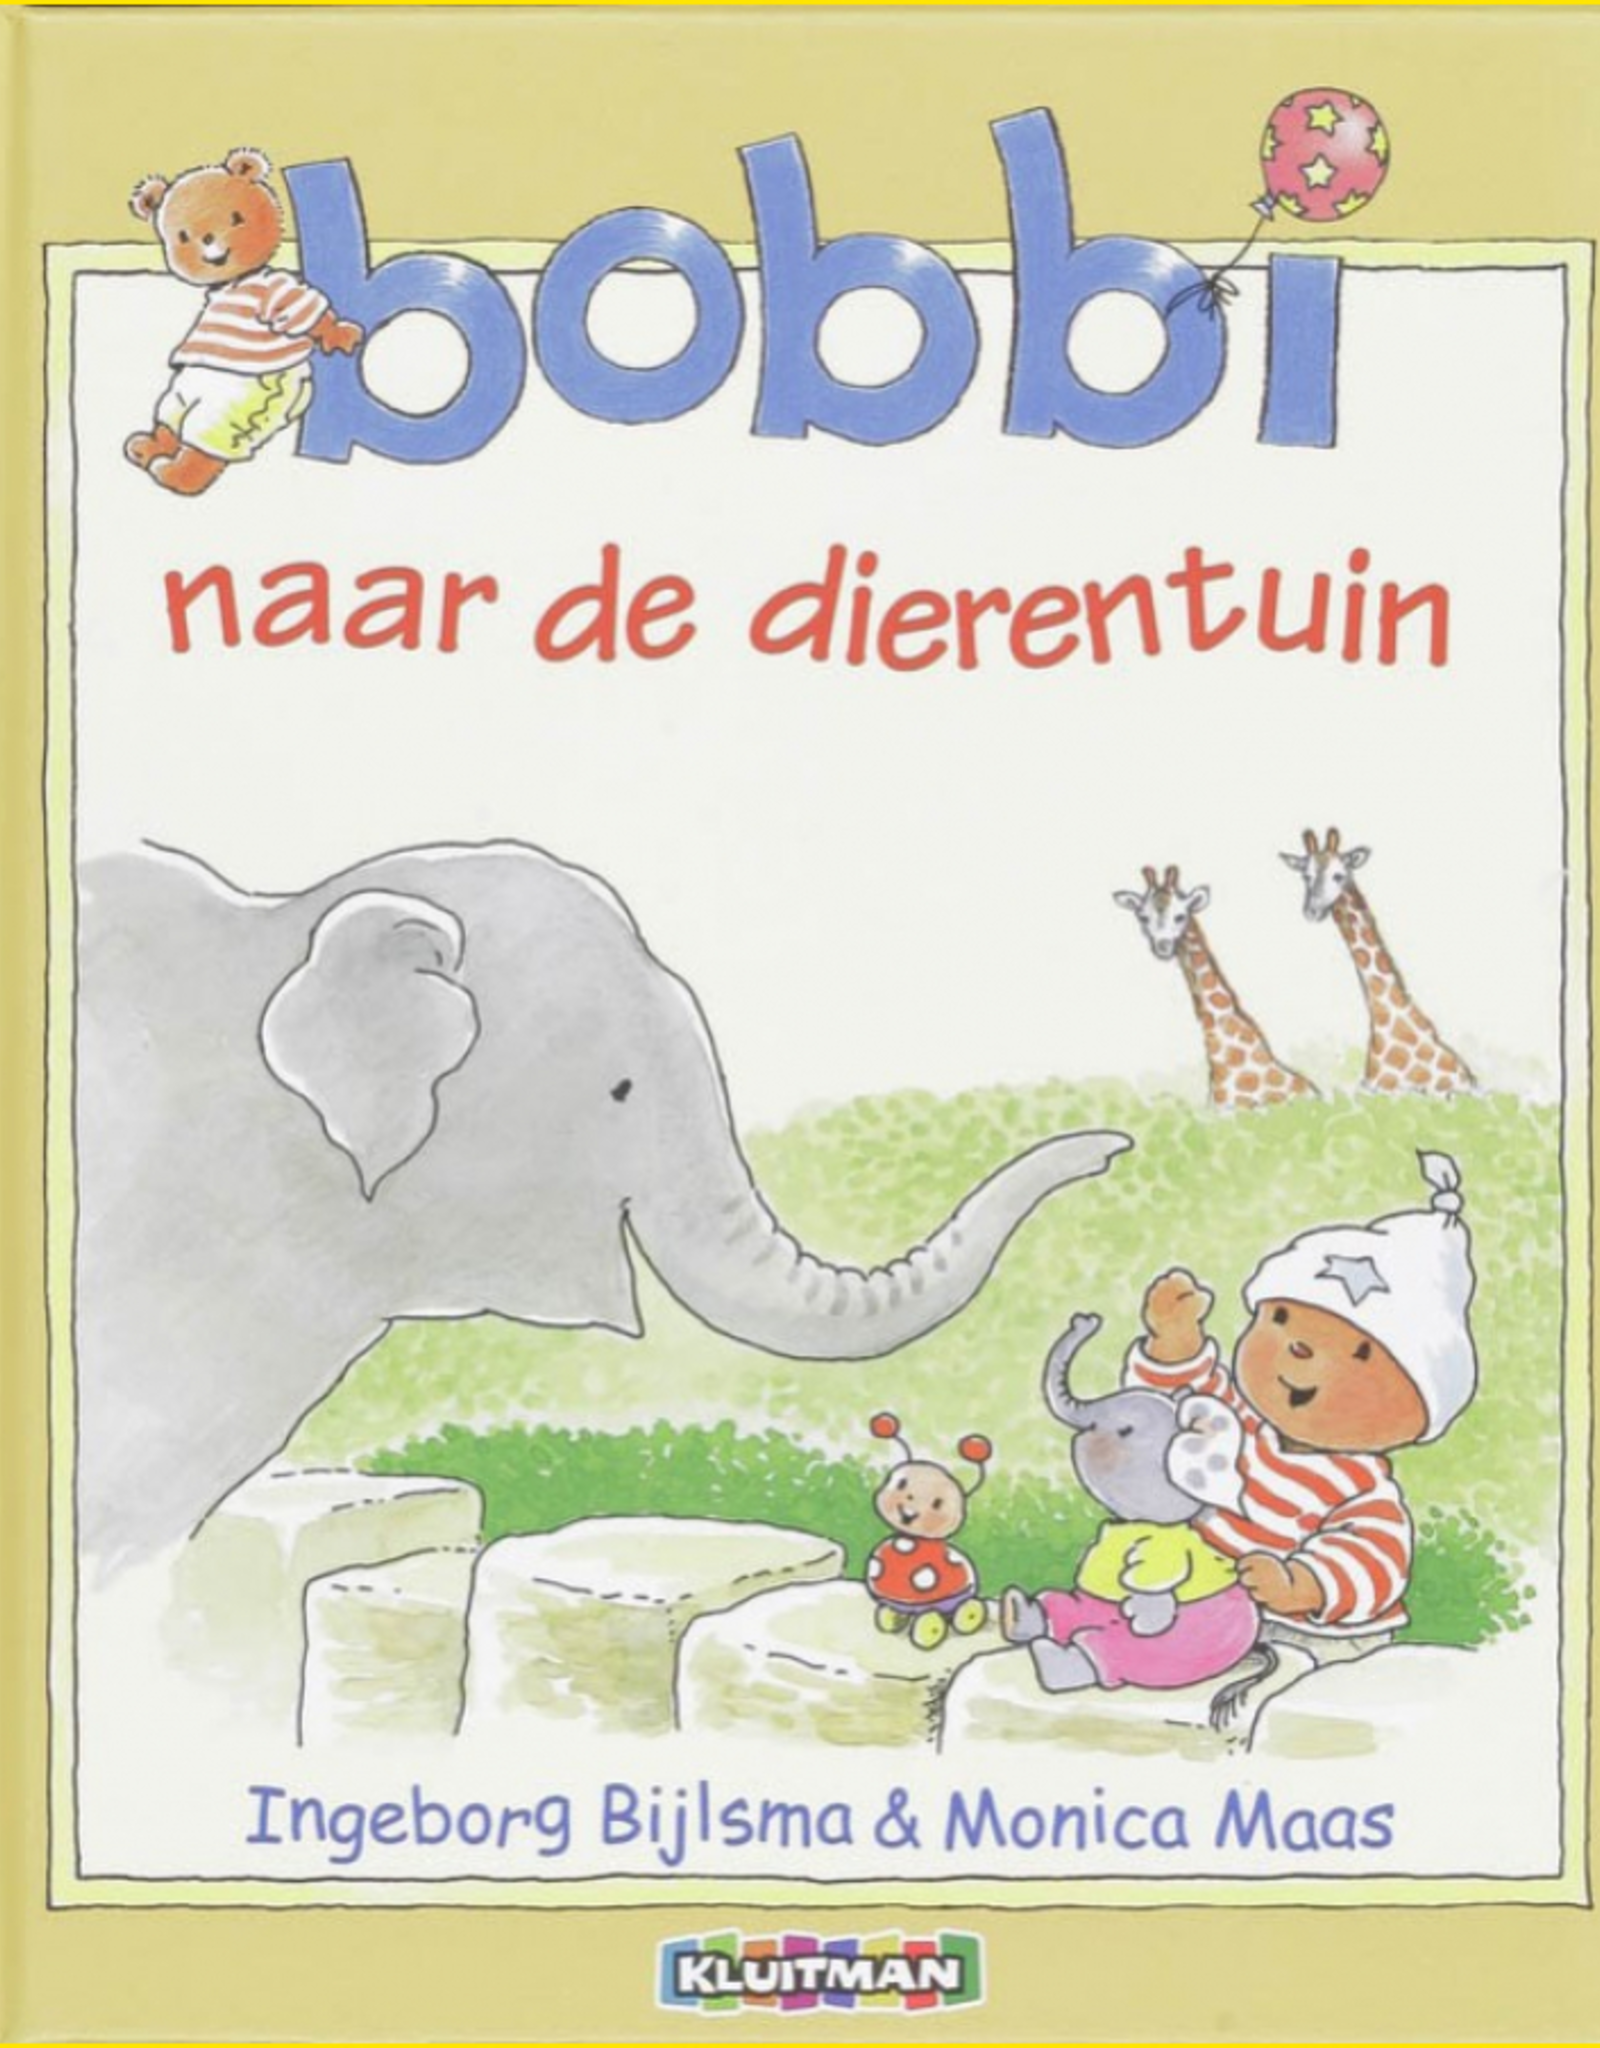 Bobbi naar de Dierentuin - Een vrolijk boek voor Peuters